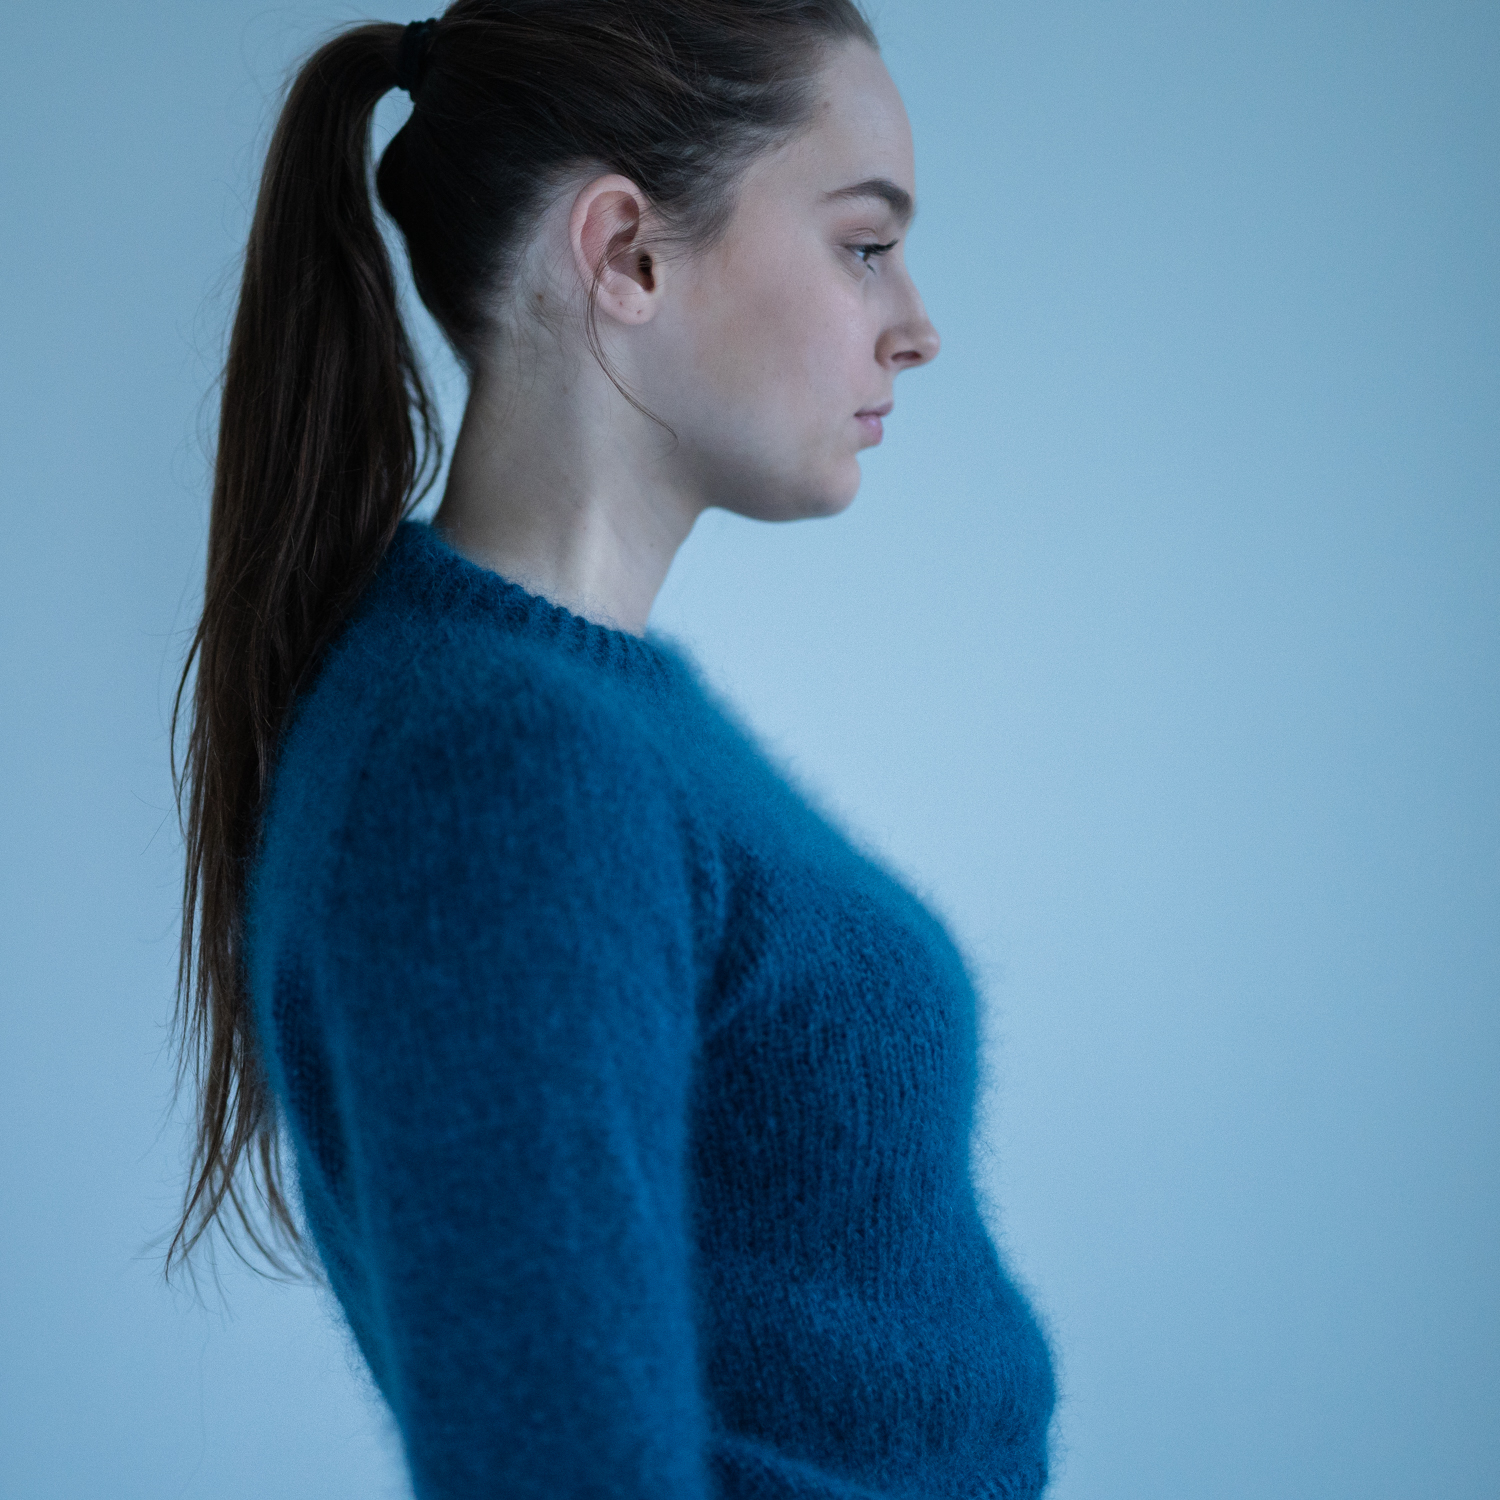  - Eben Sweater | Basic sweater women knitting pattern - by HipKnitShop - 29/06/2018